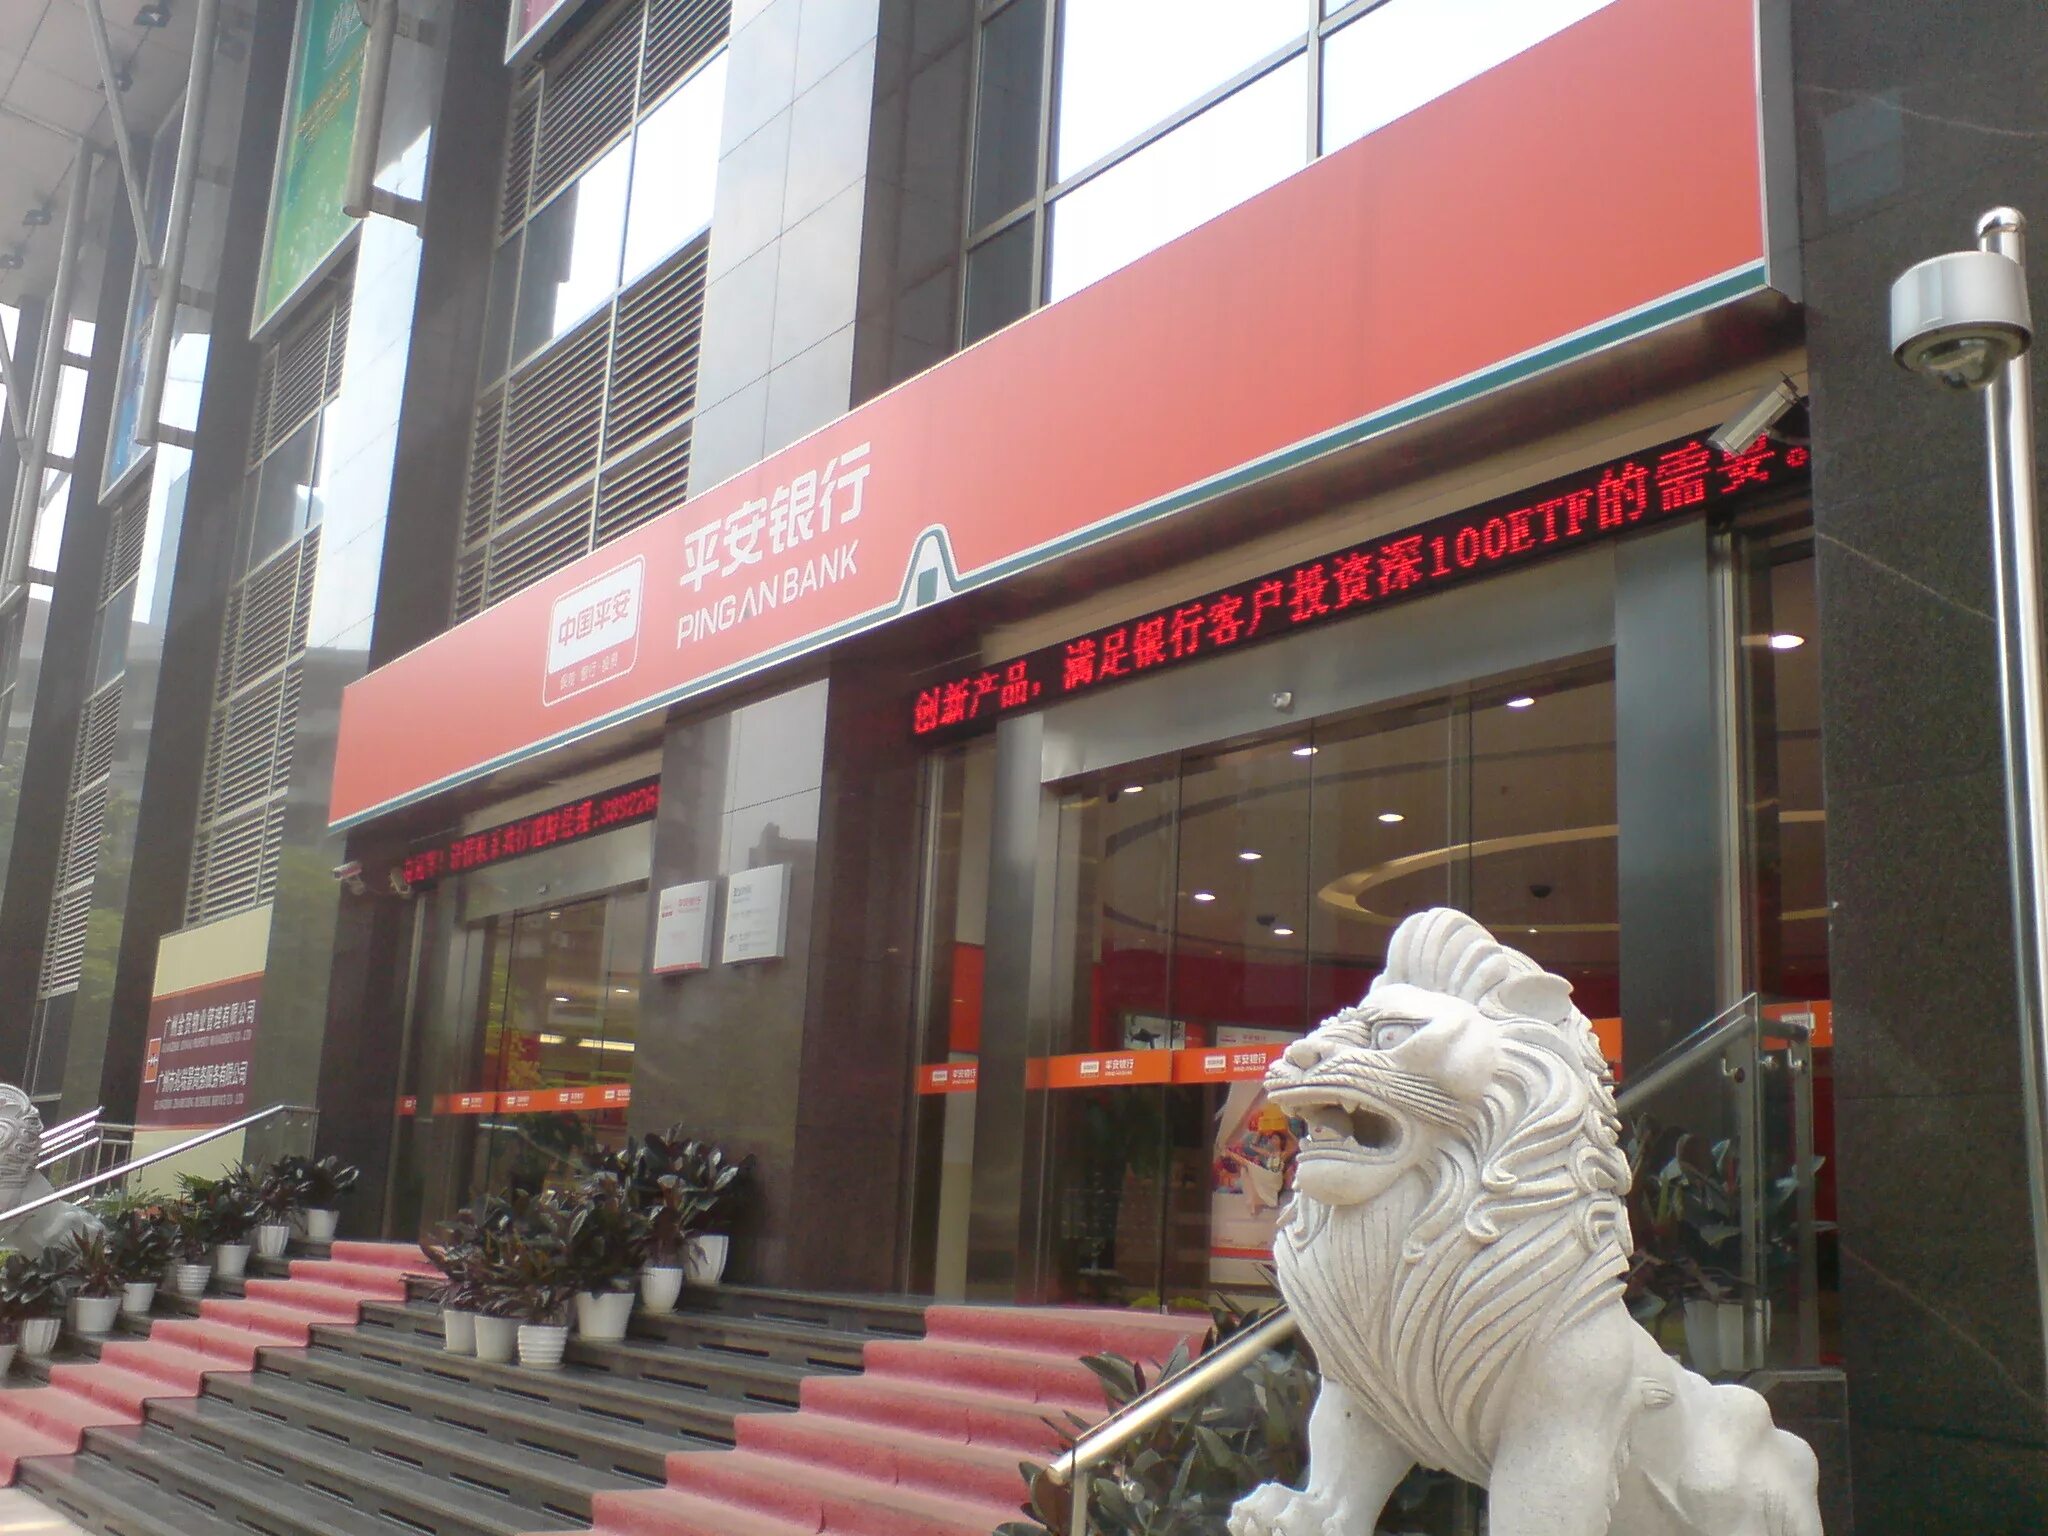 Ping an bank. Гуанчжоу банк. Bank of China Шэньян. Банк пинг. Банк Гуанчжоу в Гуанчжоу.